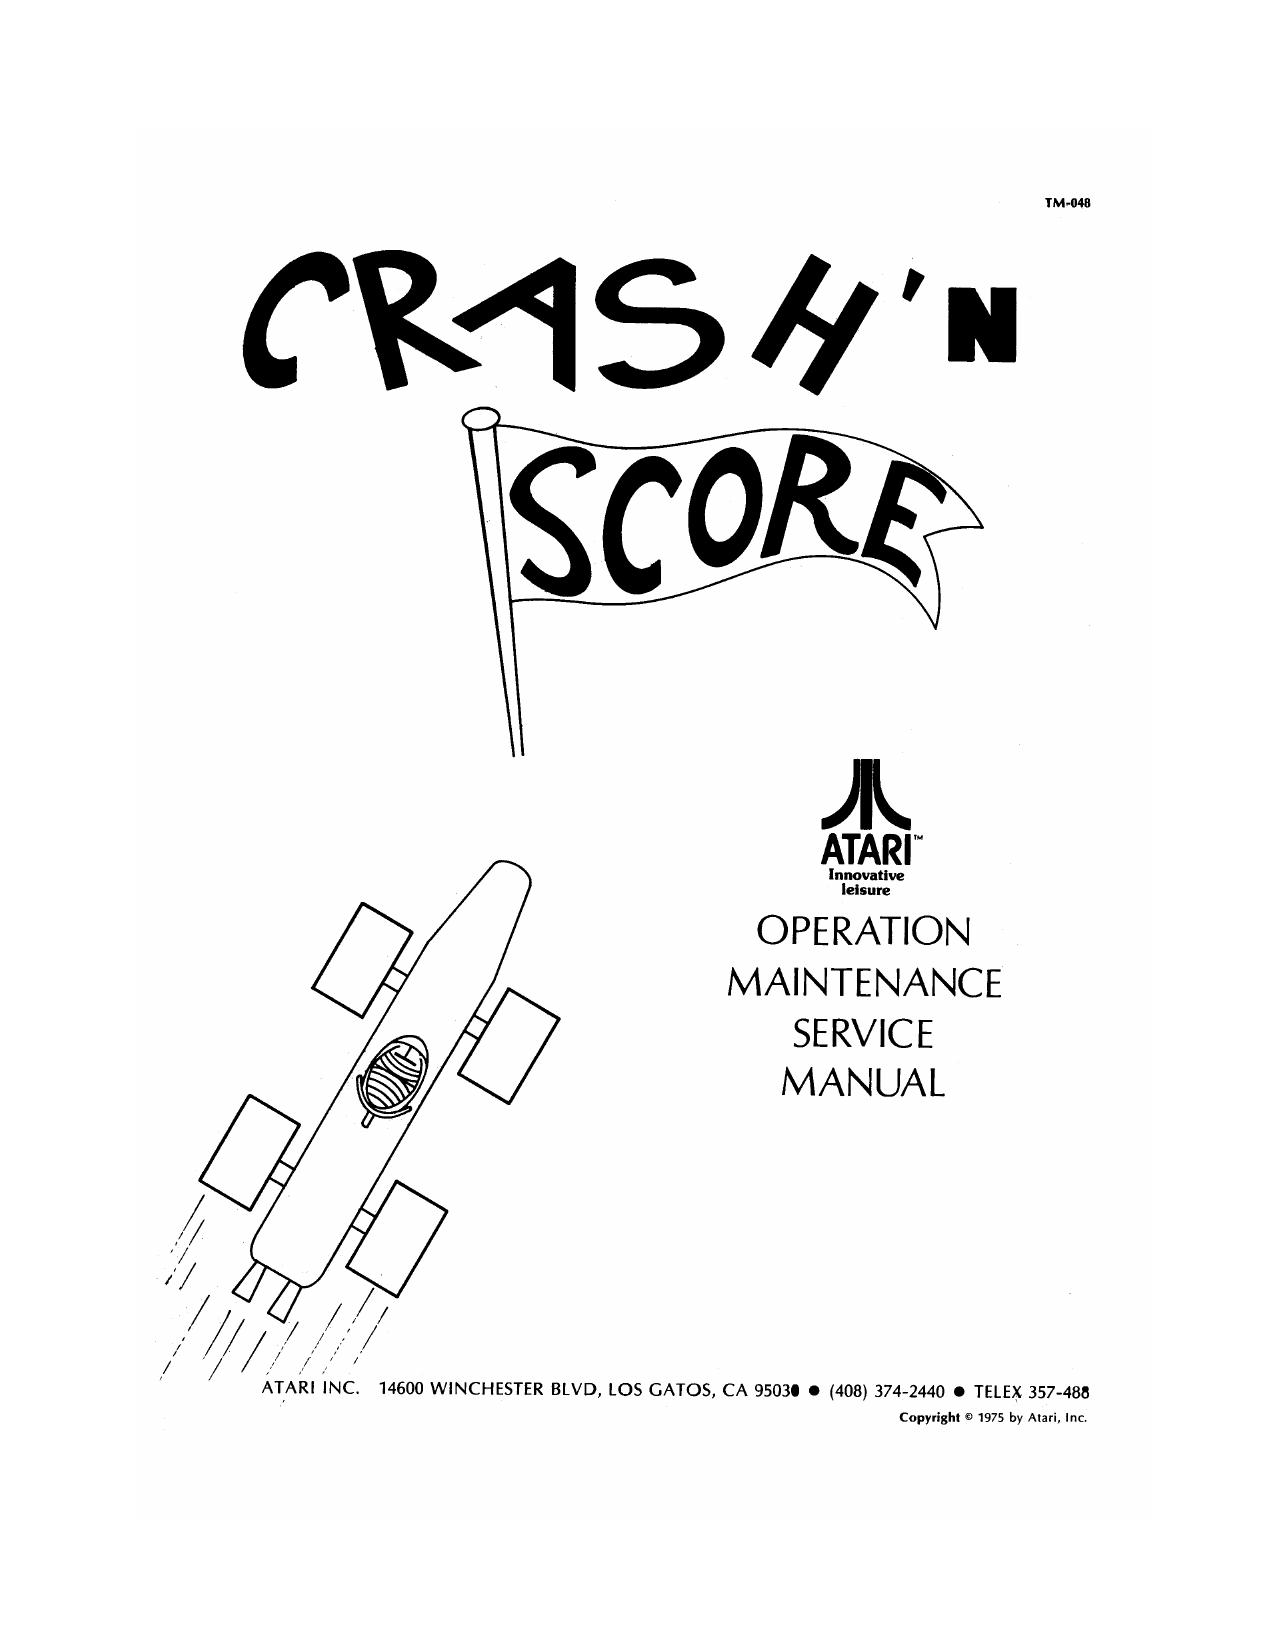 crashnscore